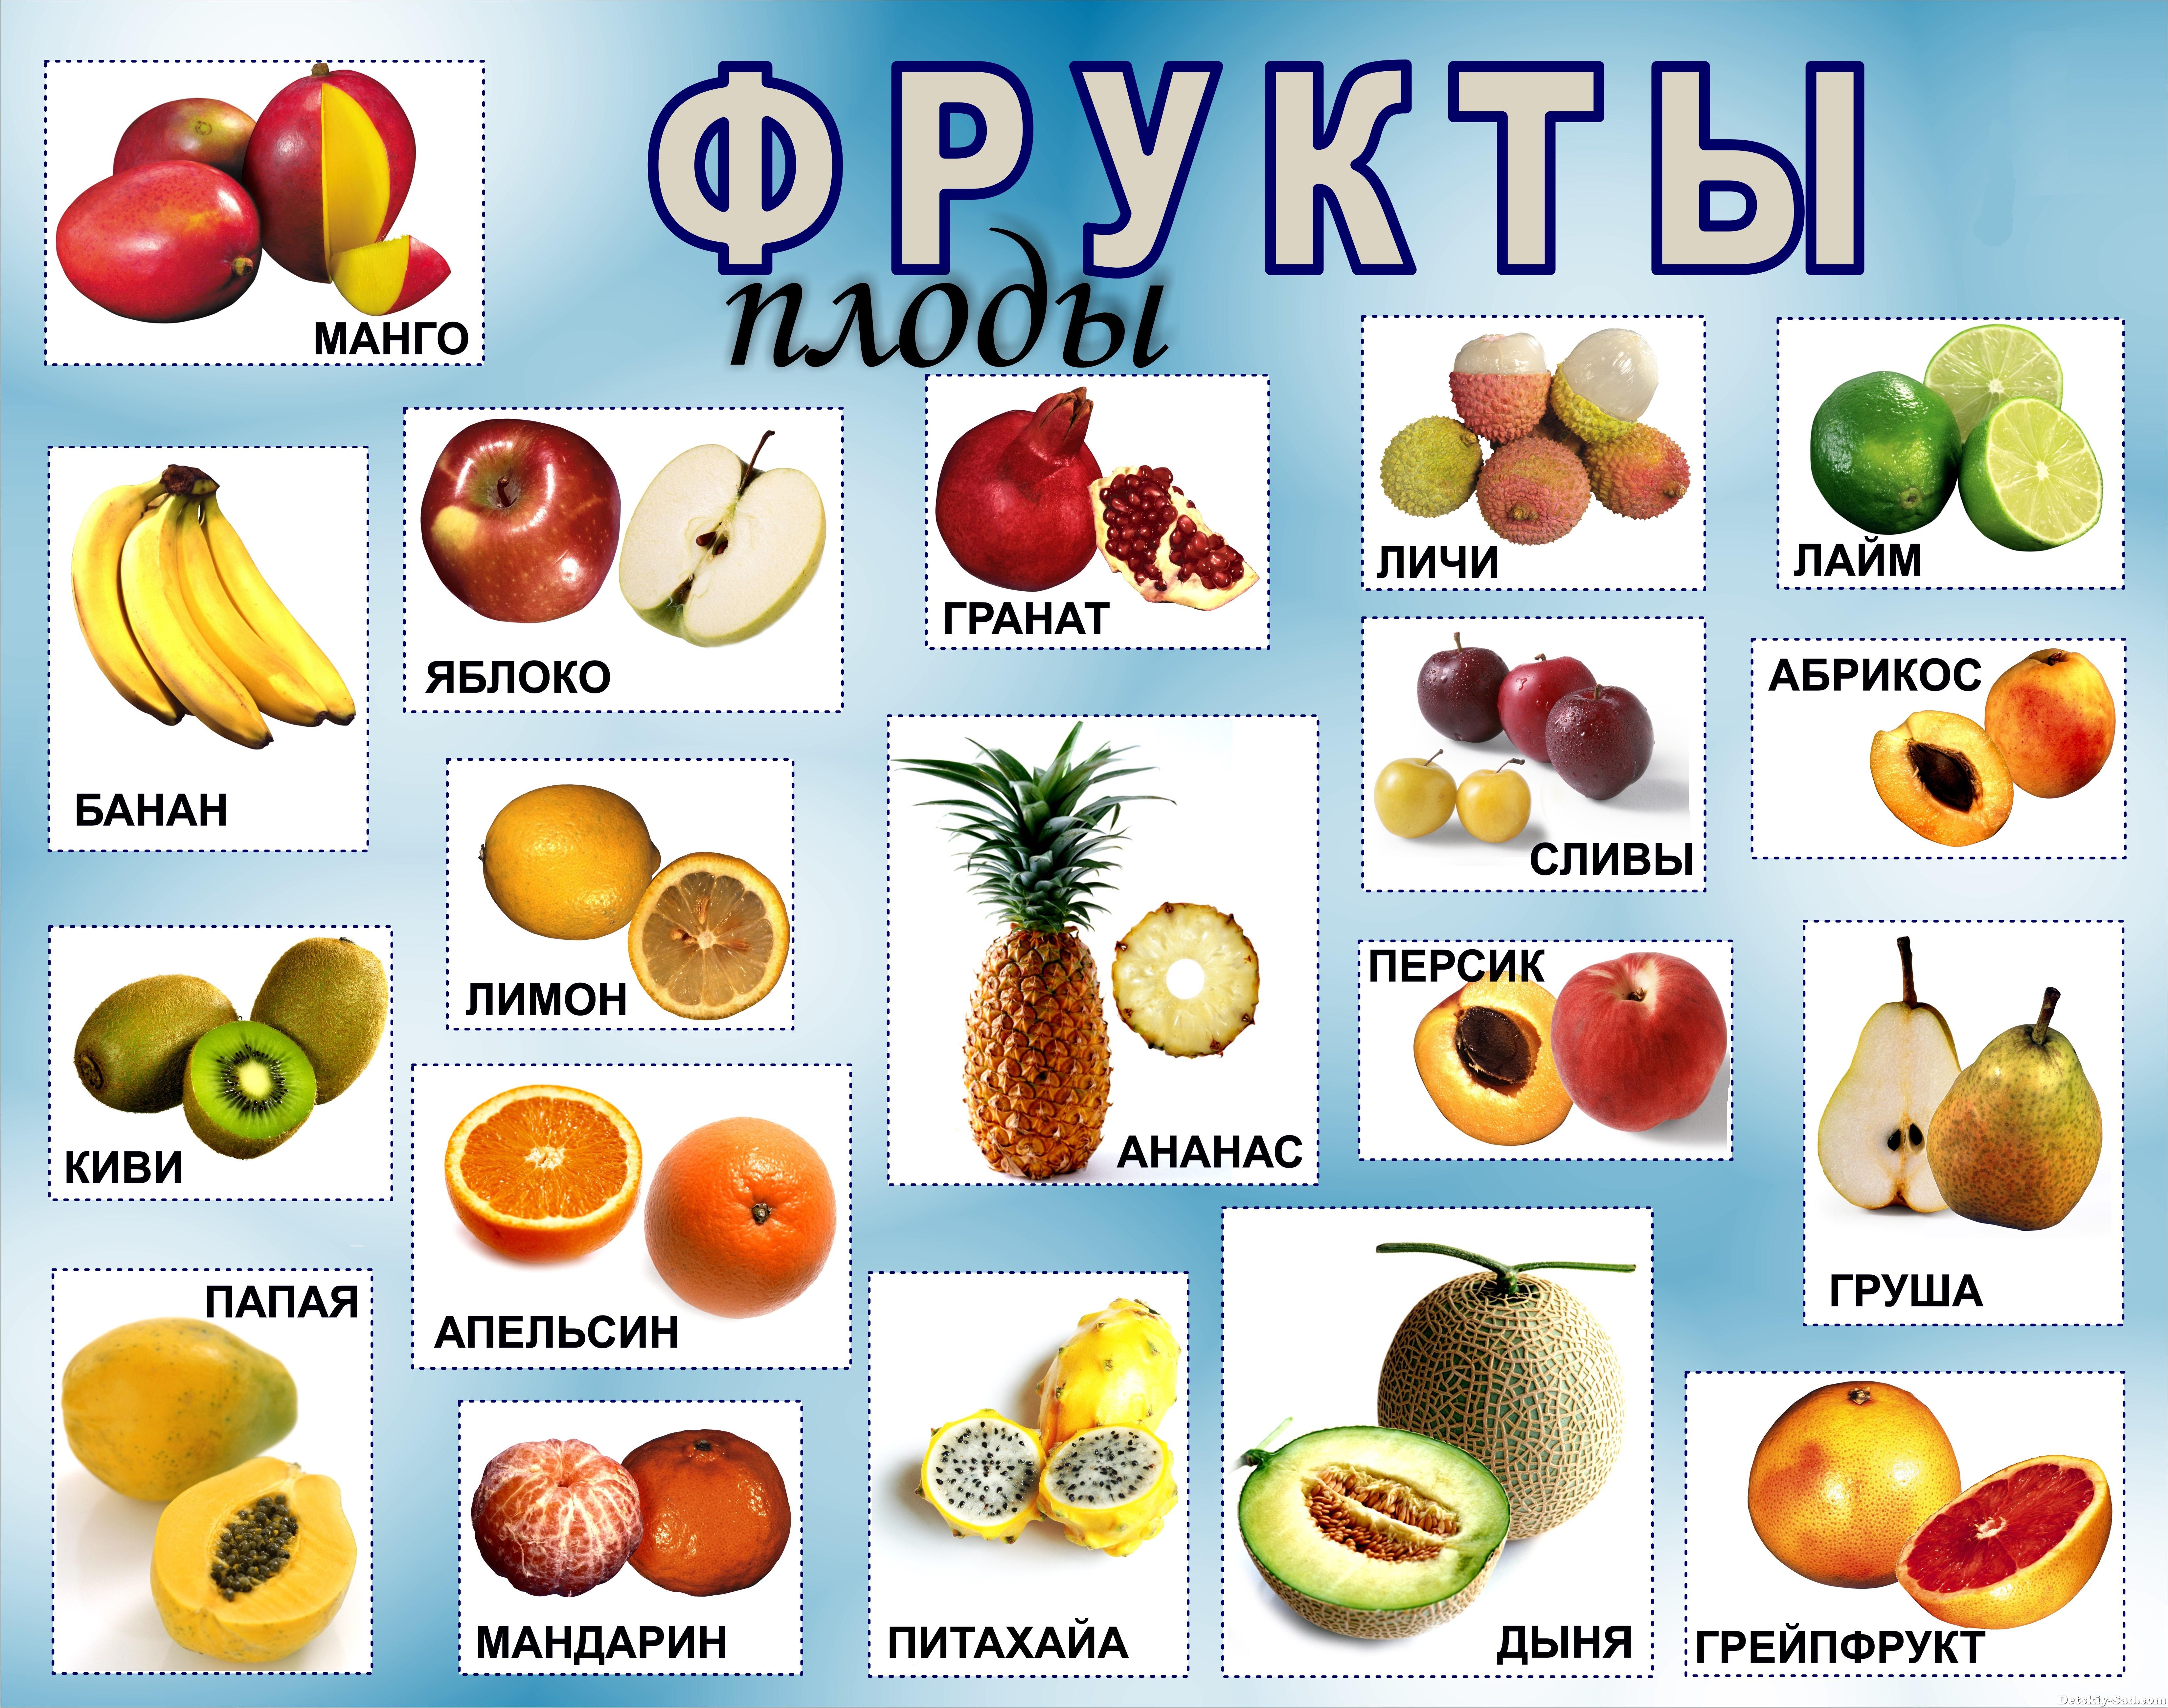 Фруктовая где находится. Название фруктов. Овощи и фрукты названия. Фрукты и ягоды с названиями. Название фруктов с картинками.